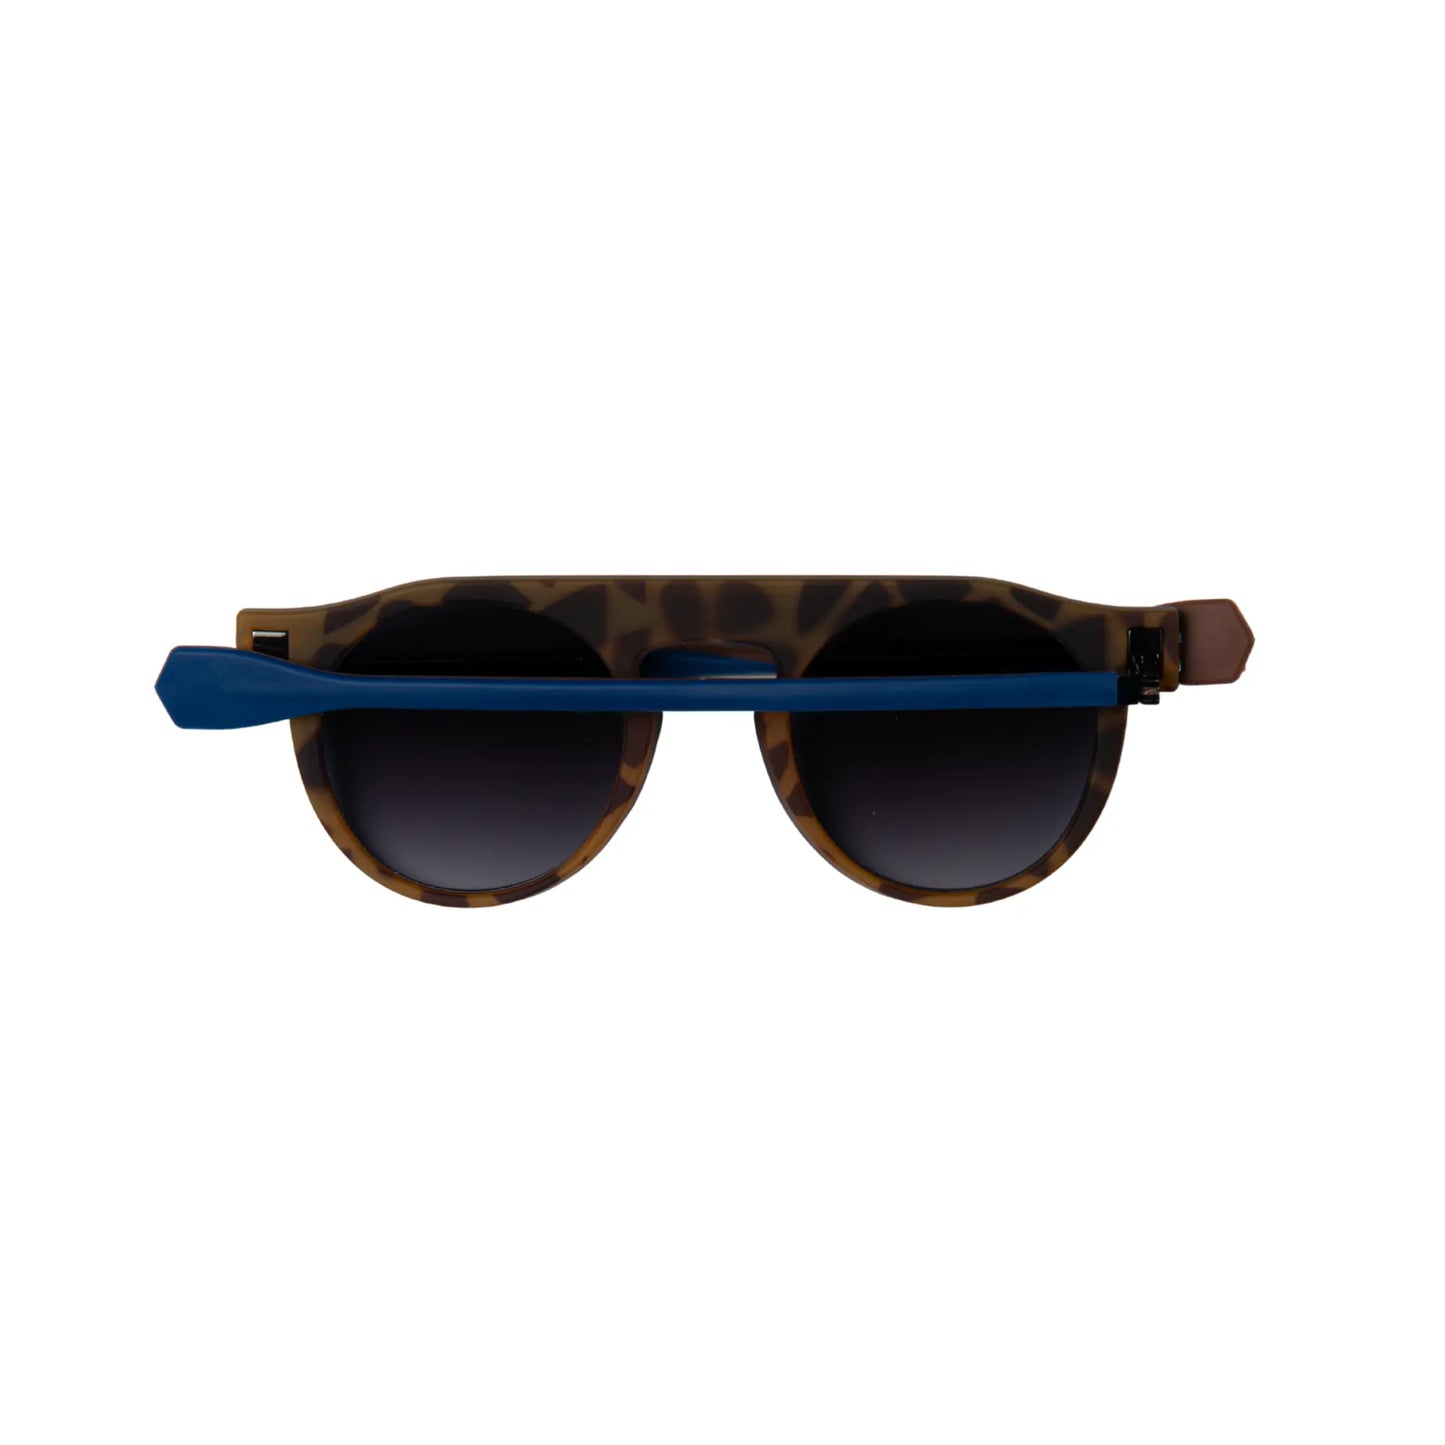 Reverso sunglasses Havana & dark blue reversible & ultra light back view